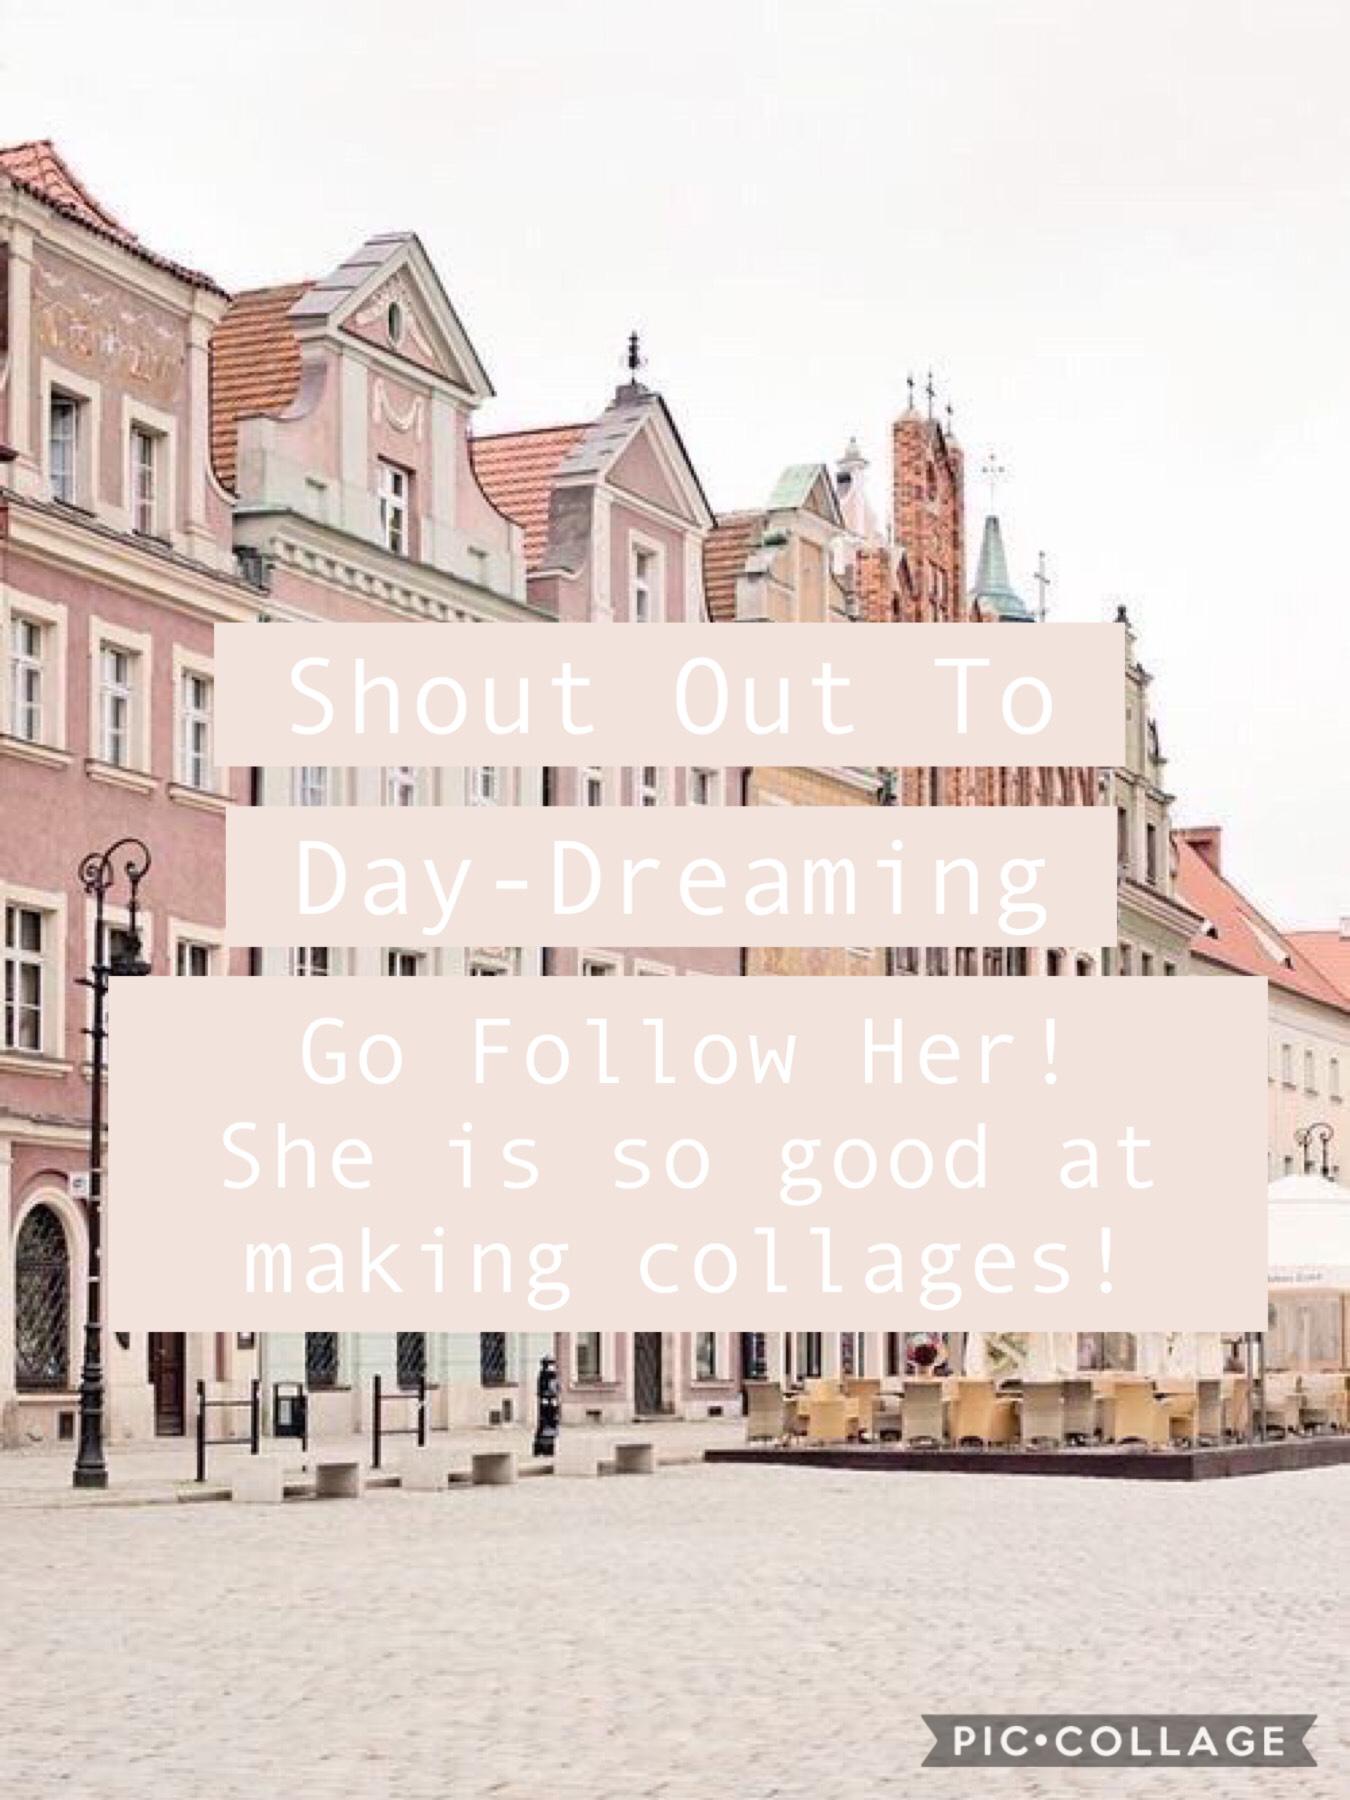 Go Follow Her!